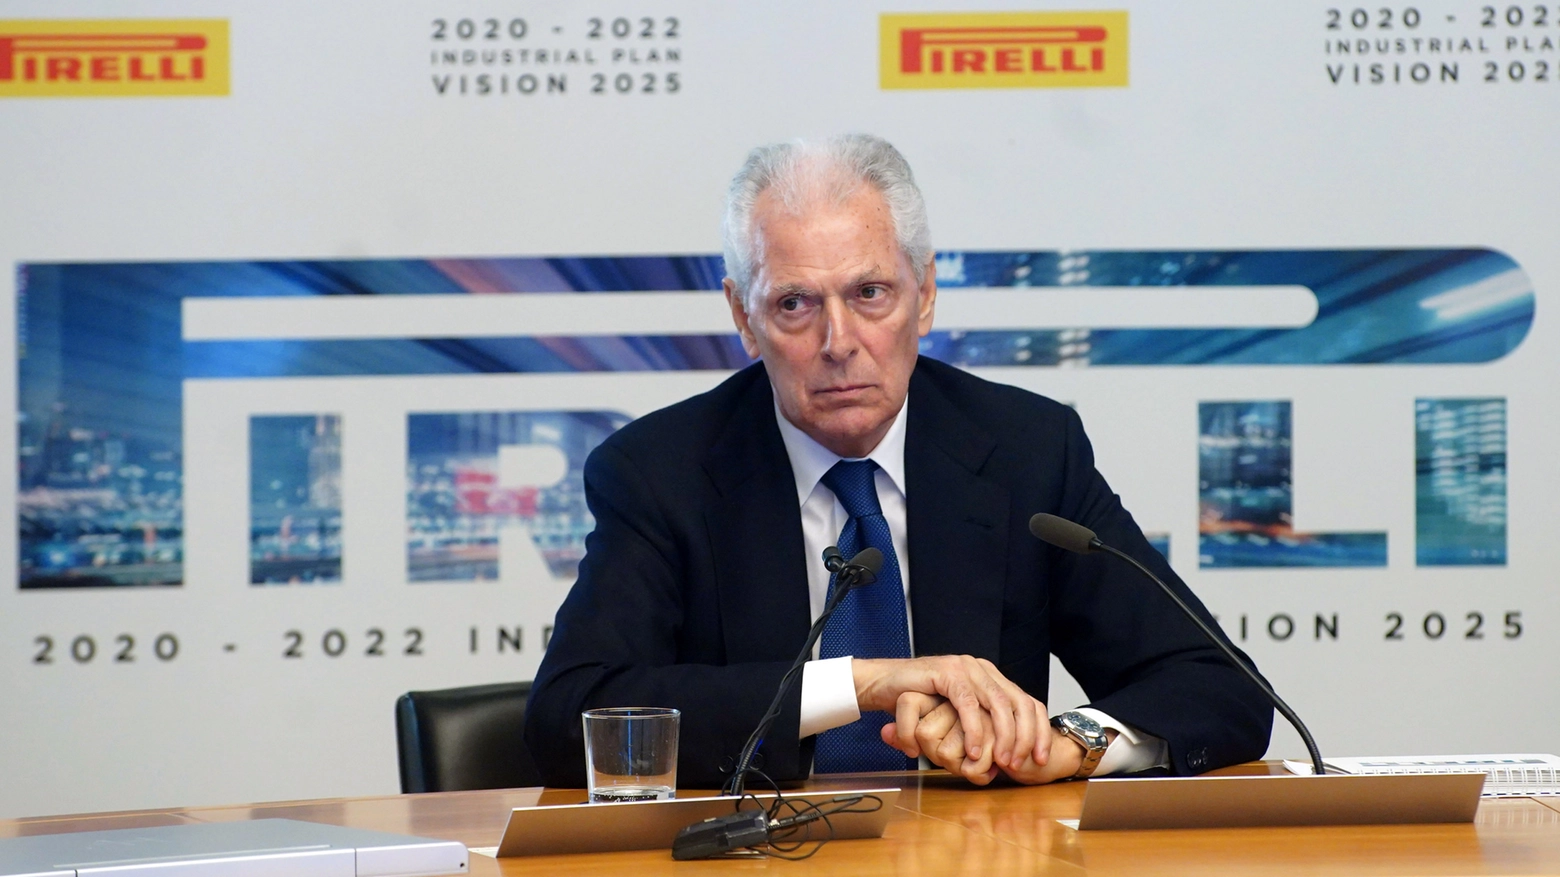 Marco Tronchetti Provera, CEO Pirelli (Imagoeconomica) 